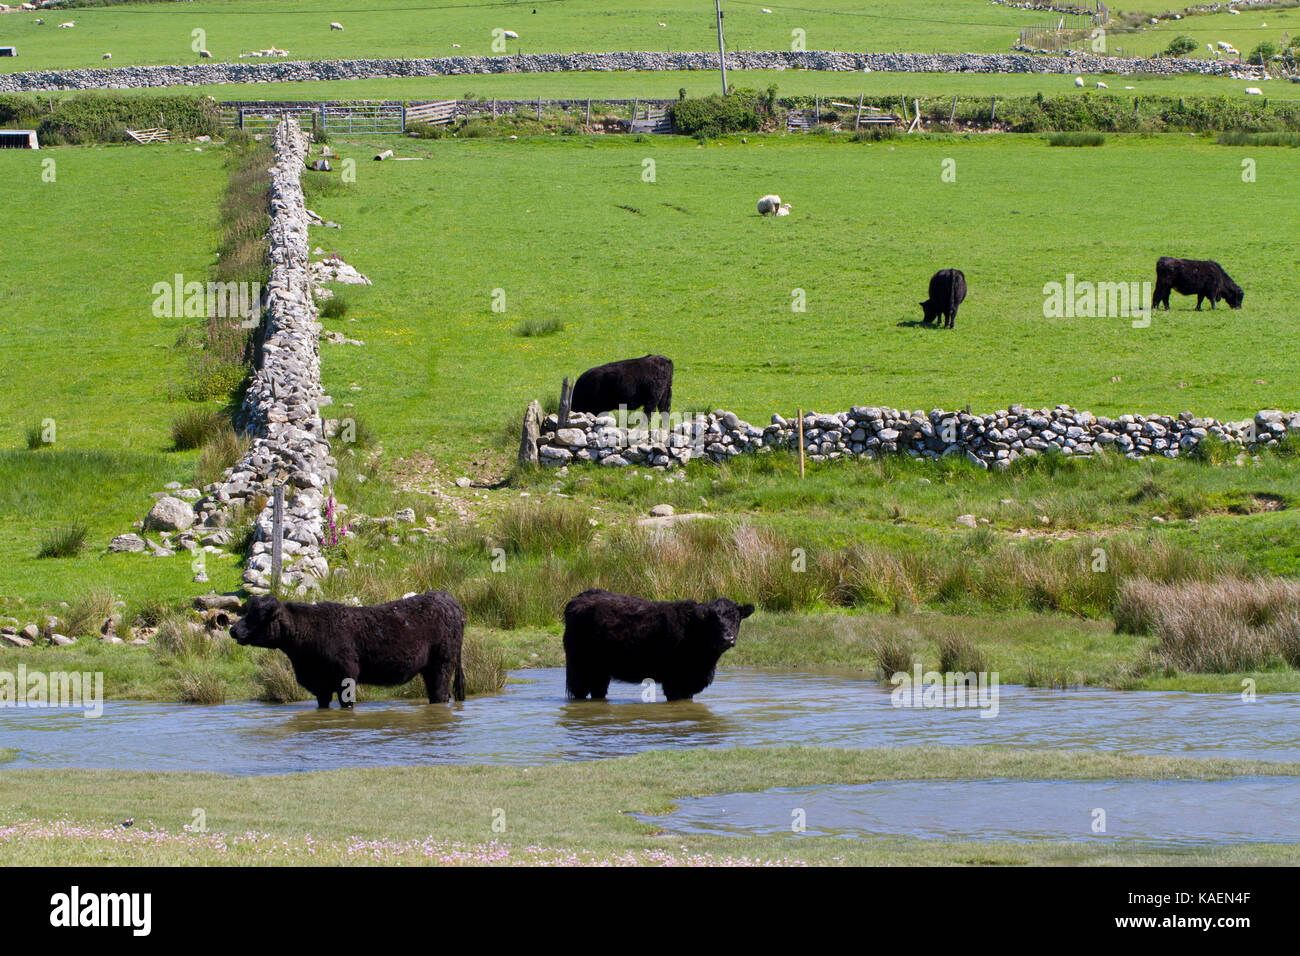 Welsh schwarzen Rinder stehen im Wasser am Rande des saltmarsh. Tonfanau,, Tywyn, Gwynedd, Wales. Mai. Stockfoto